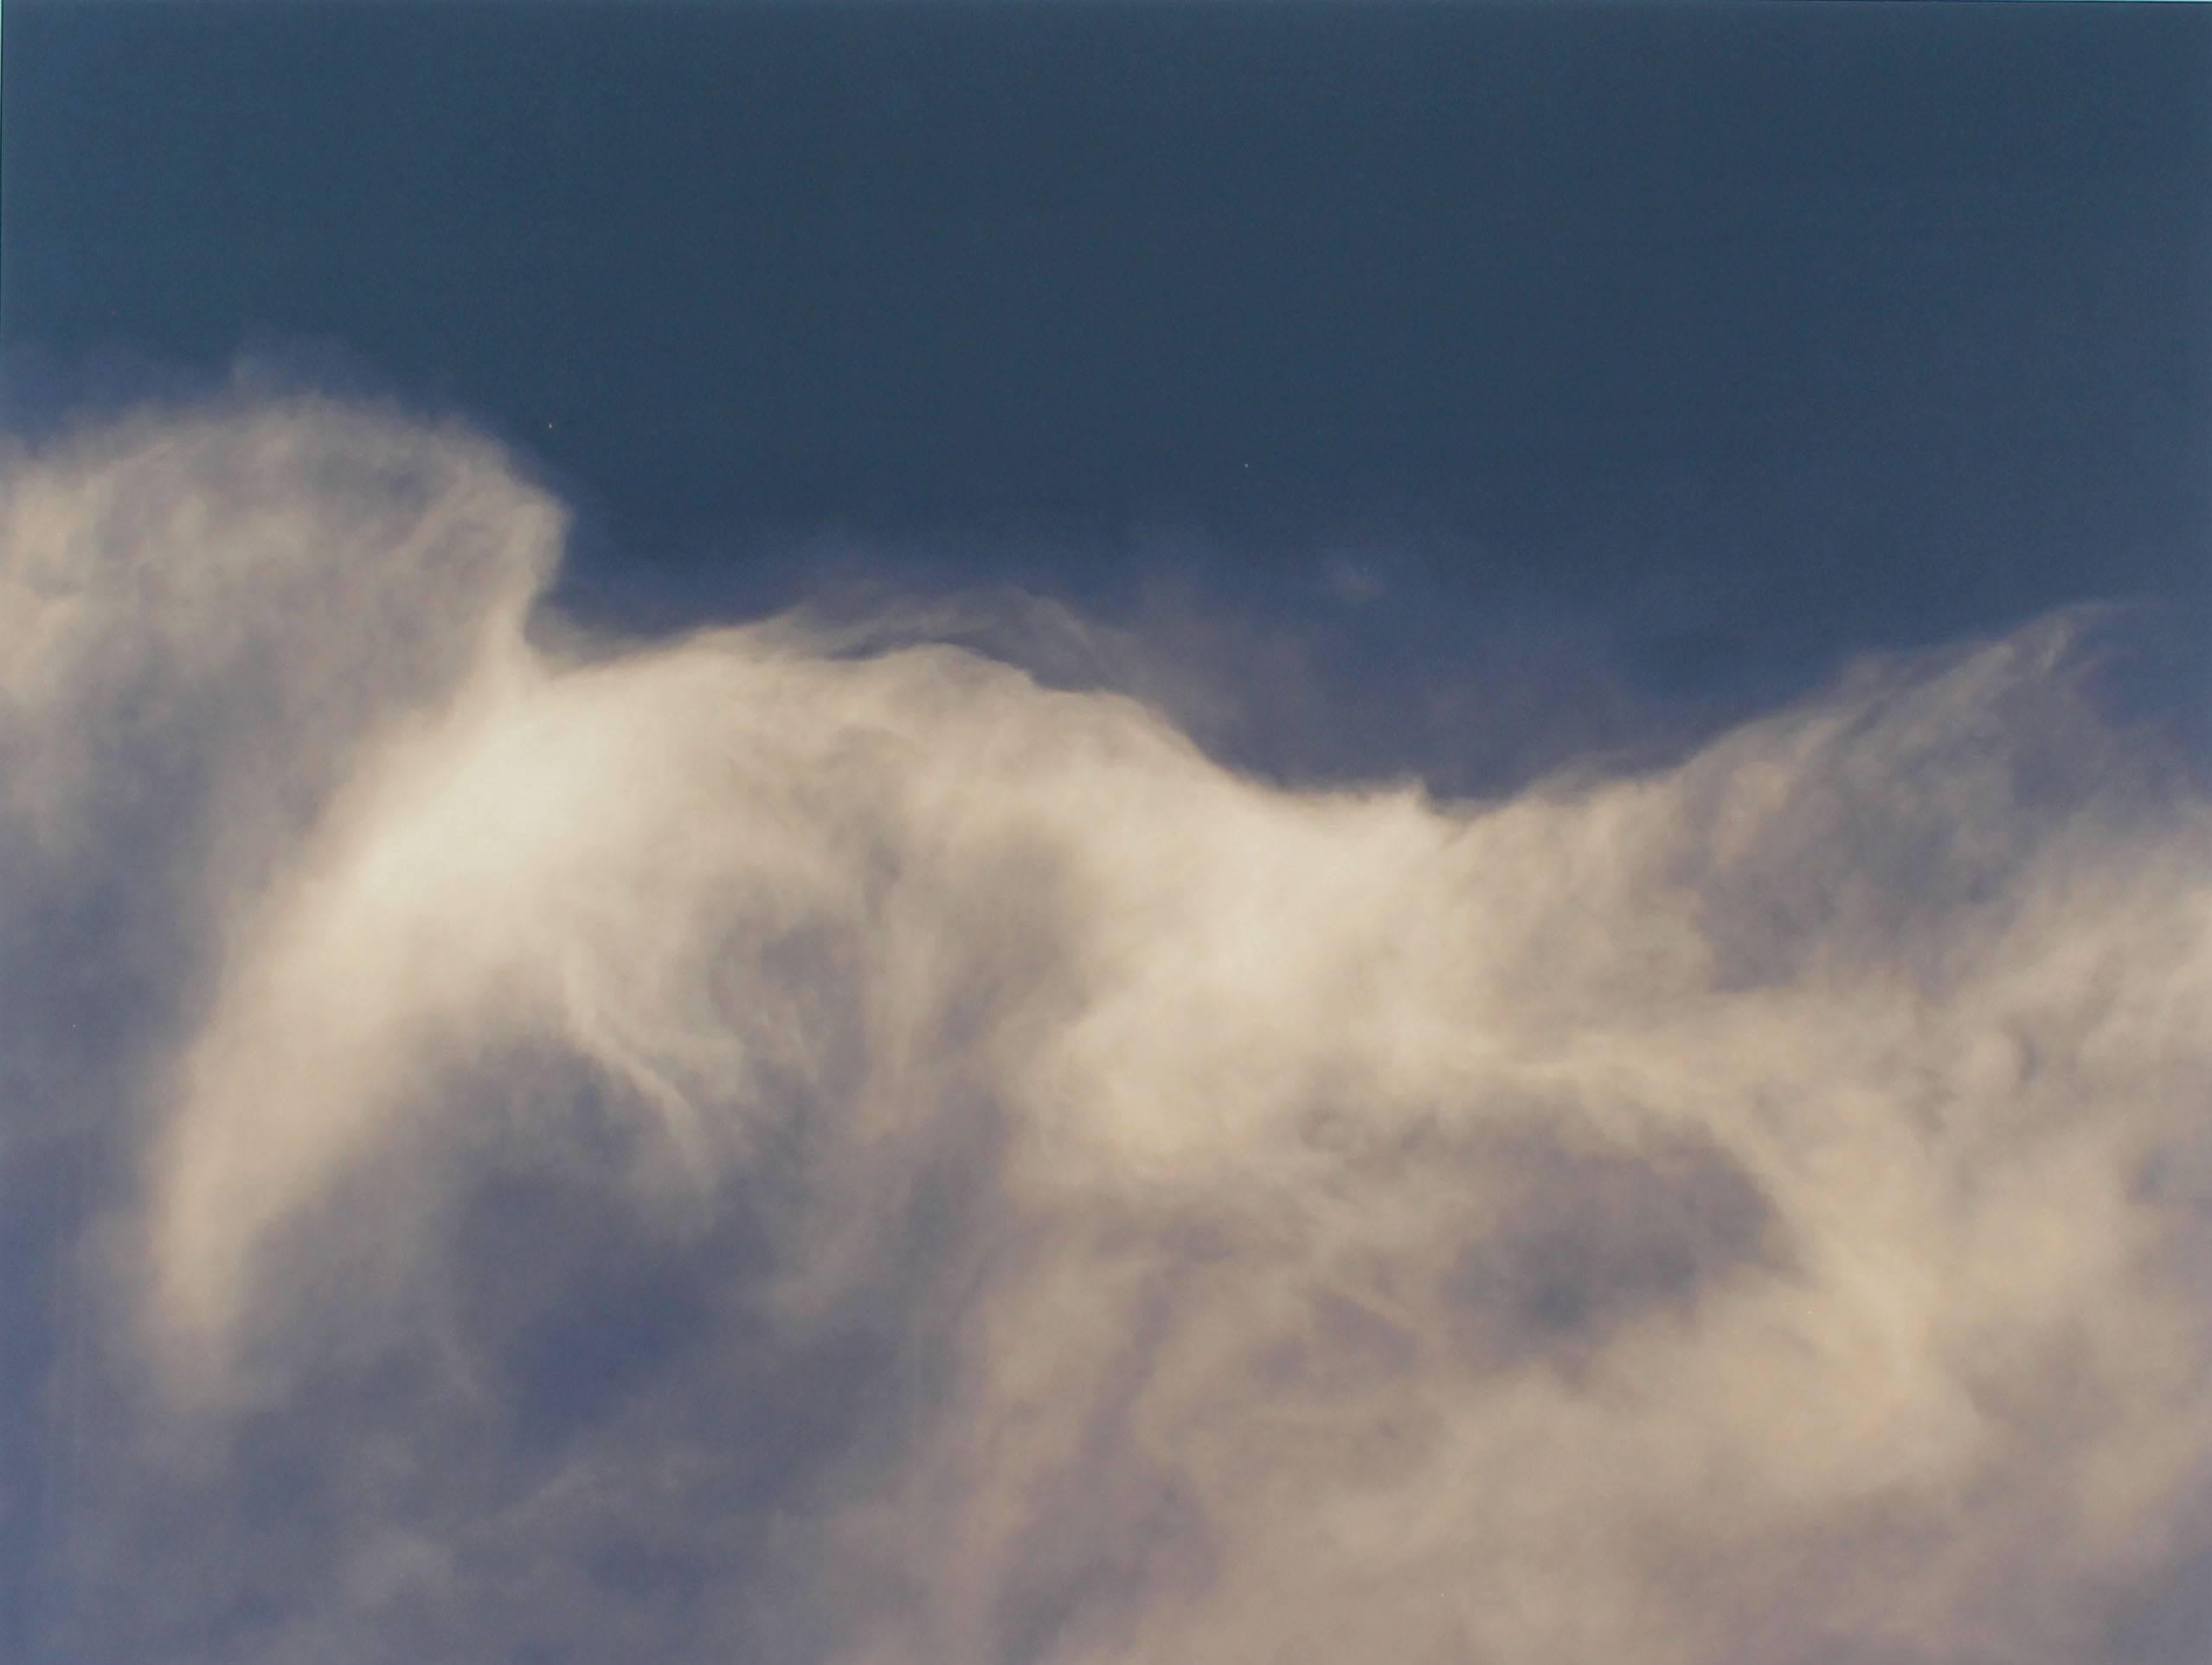 Gaétan Caron Abstract Photograph – ""Equivalent (Cloud- Hommage an A. Stieglitz)", Archivfotografie, 2015